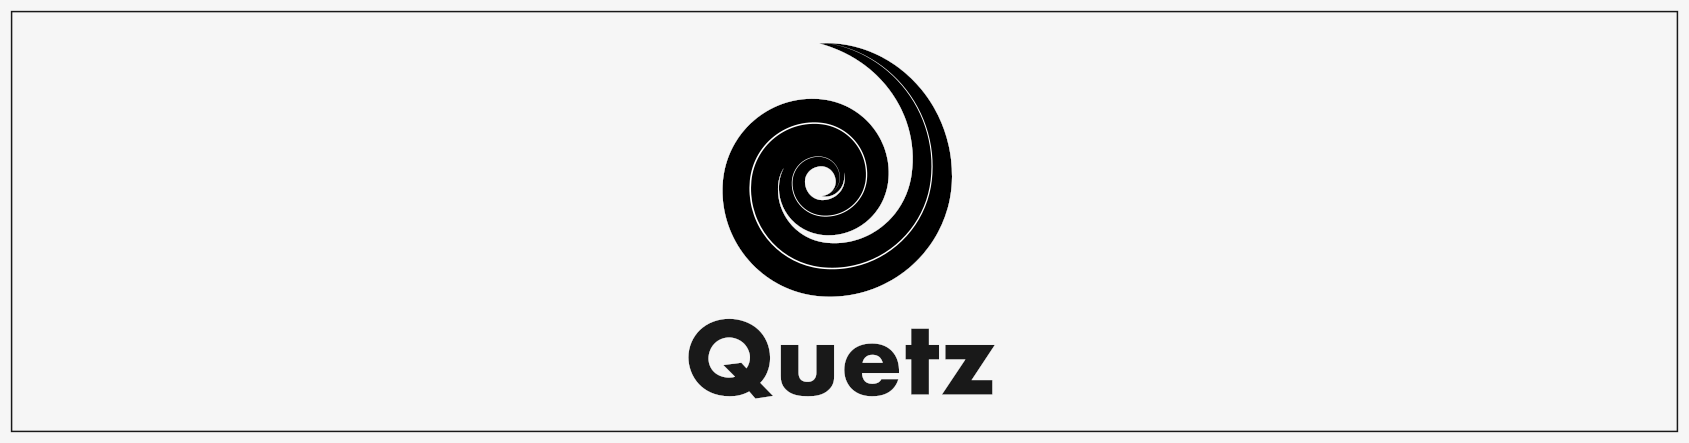 quetz header image